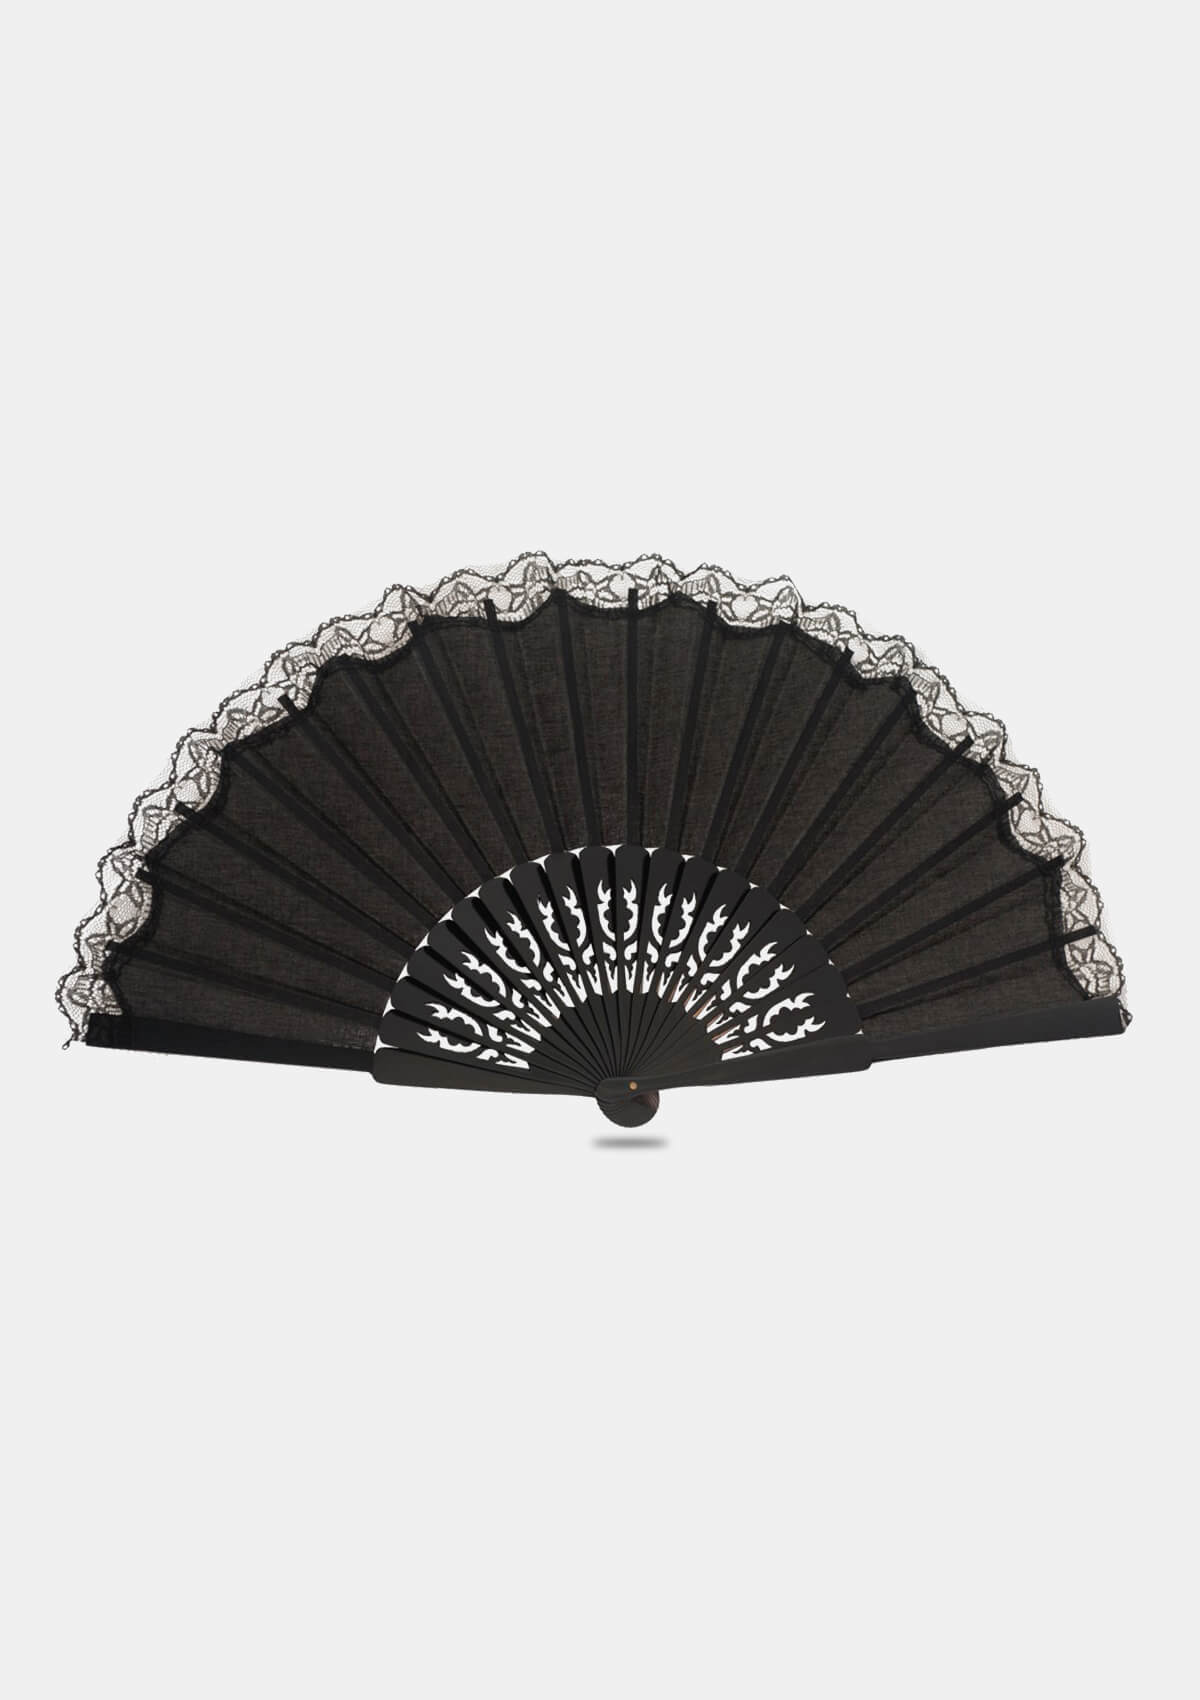 Flamenco hand fan Pericon with lace black